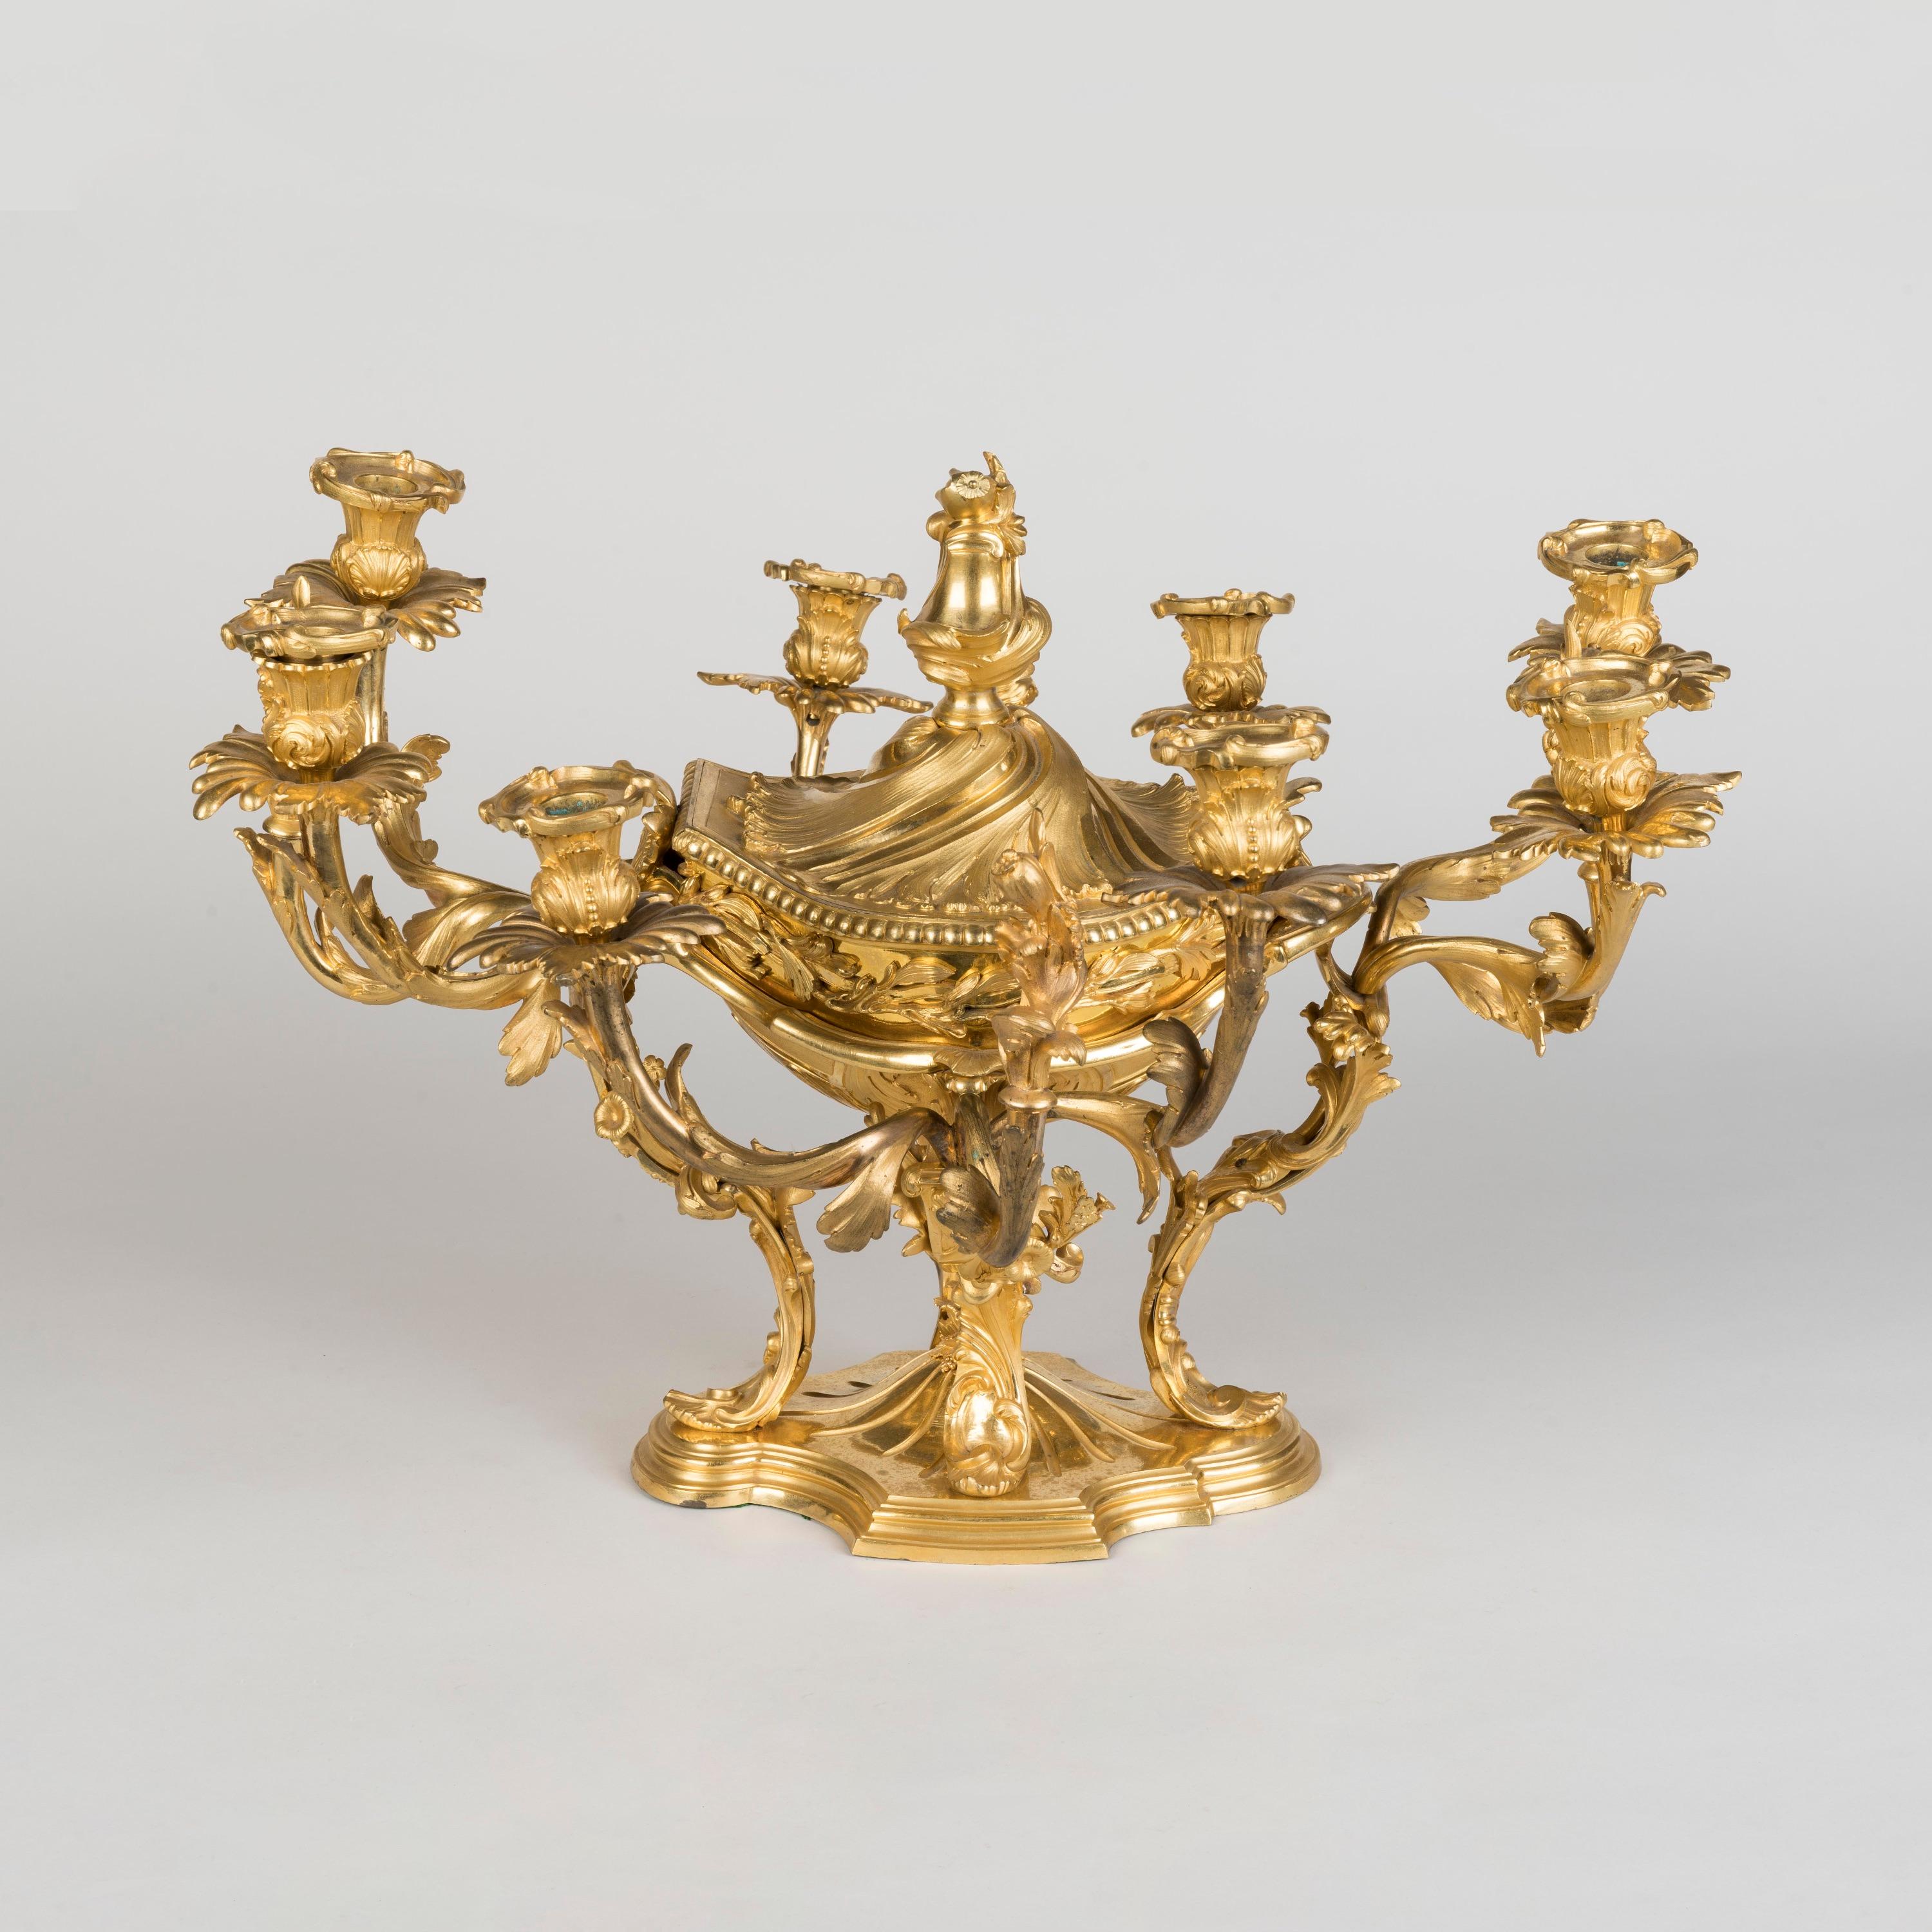 Centre de table en bronze doré de style rococo

Construite en bronze doré, d'une fonte raffinée et finie avec un revêtement bruni, s'élevant sur un socle façonné et moulé, avec quatre pieds à volutes d'acanthe supportant le bol à couvercle central